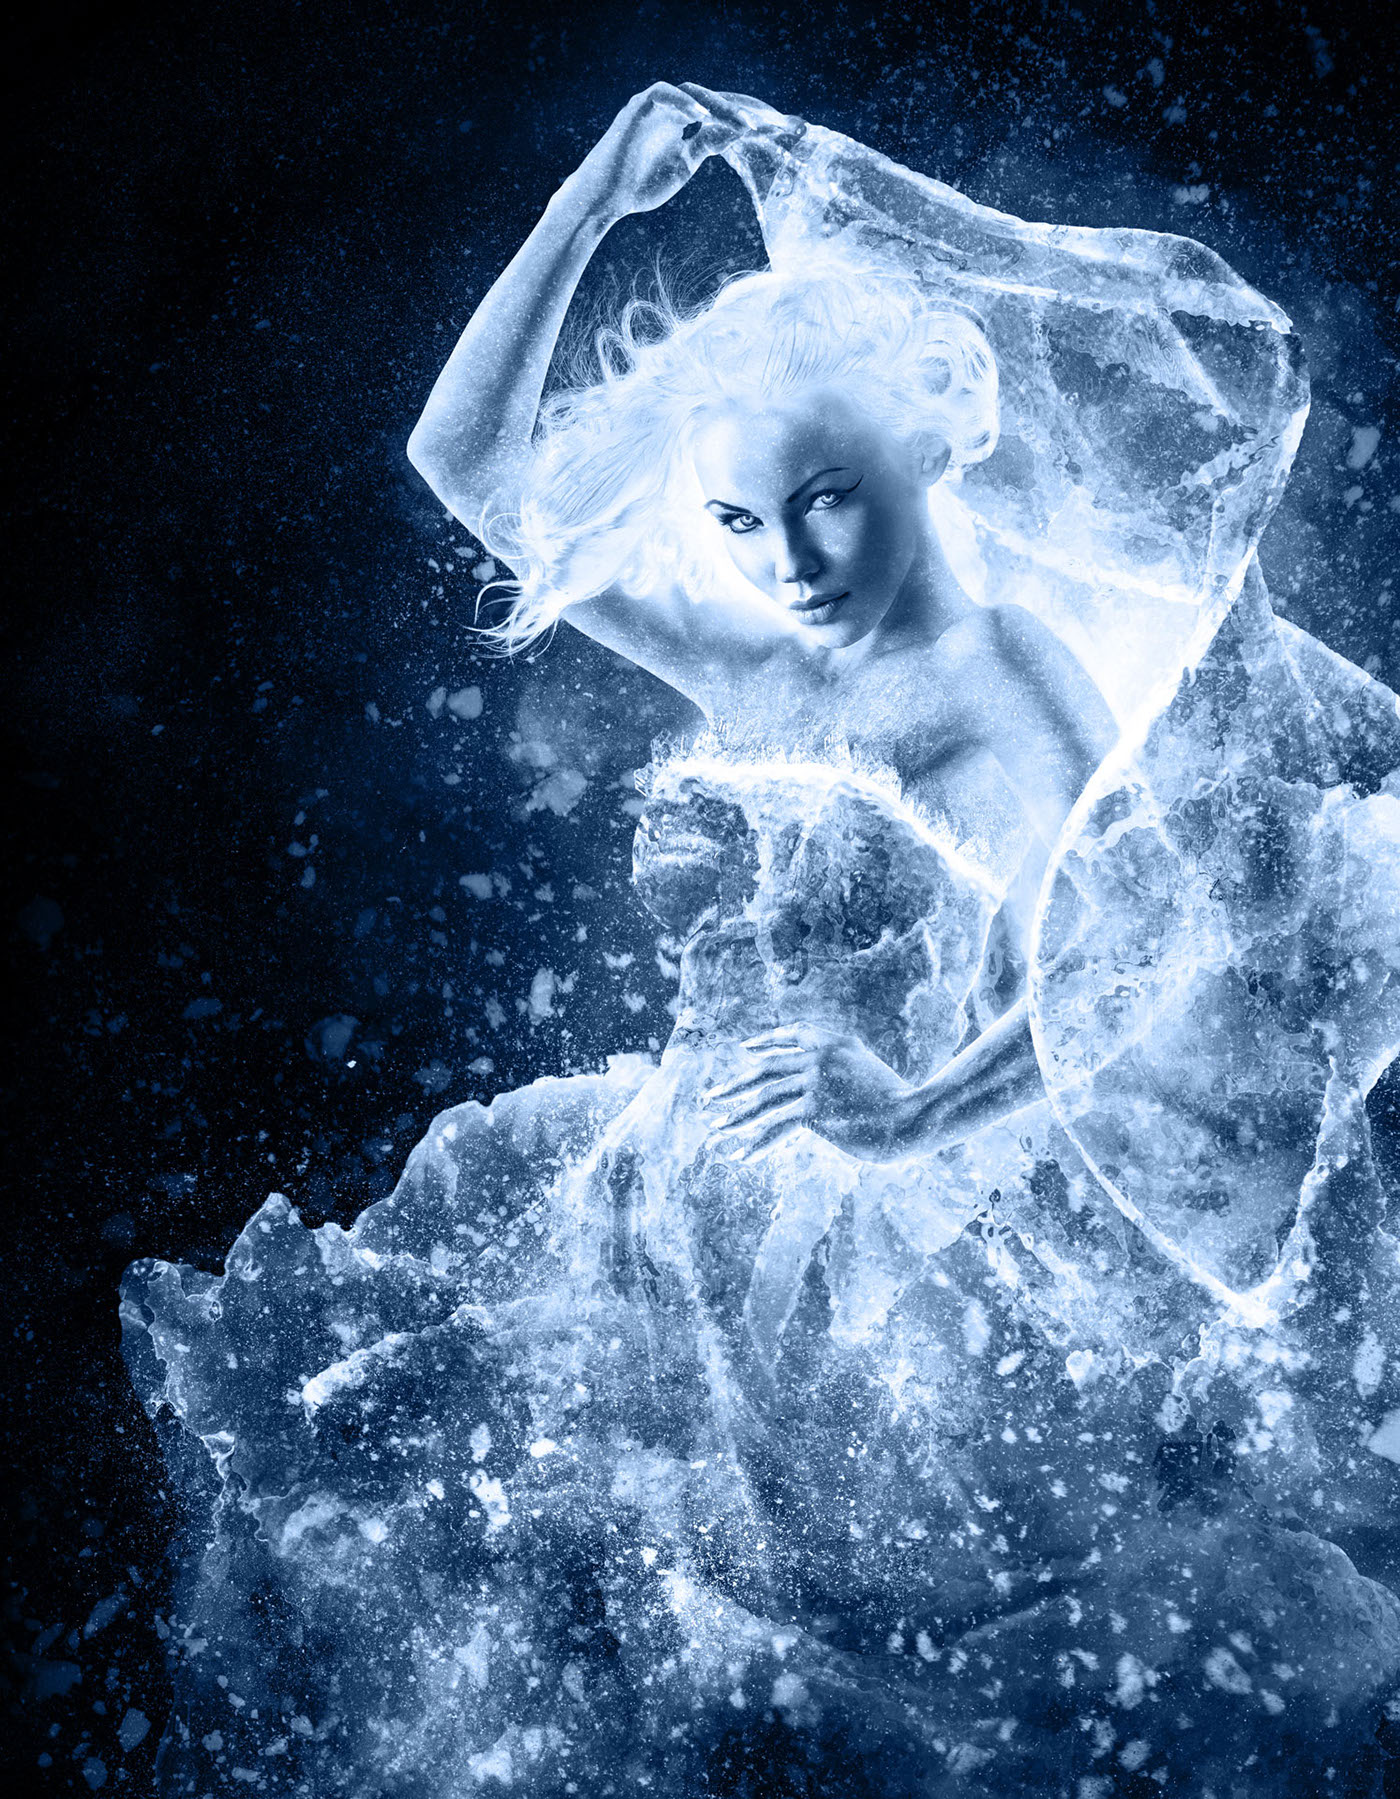 advanced photoshop drew lundquist elevendy Ice queen blue dark beauty